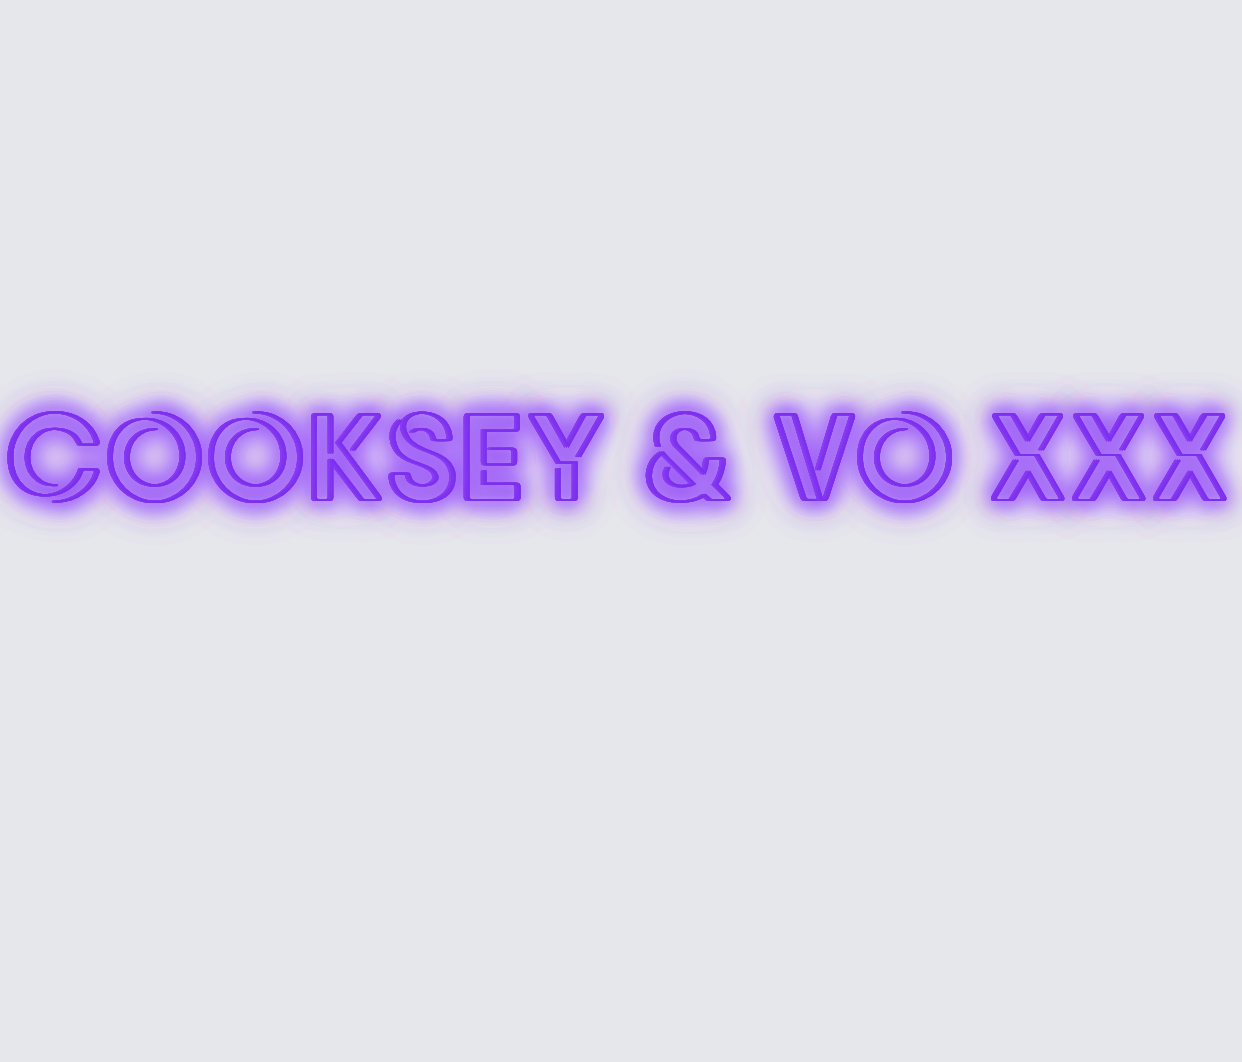 Custom neon sign - Cooksey & Vo xxx